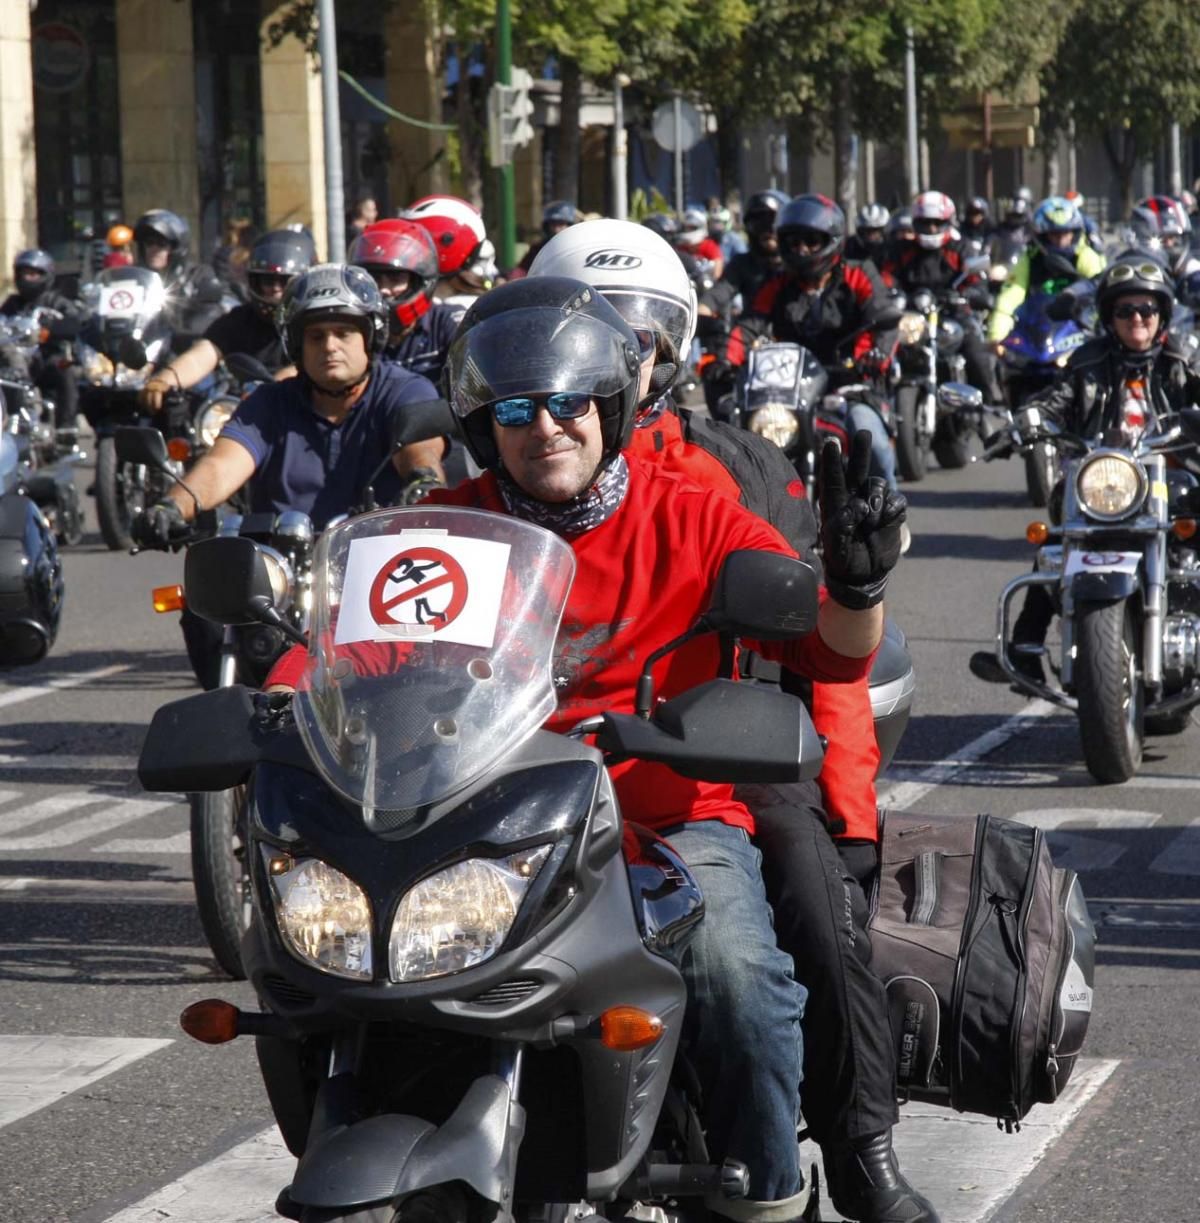 Concentración motera en Córdoba contra los guardarraíles sin protección